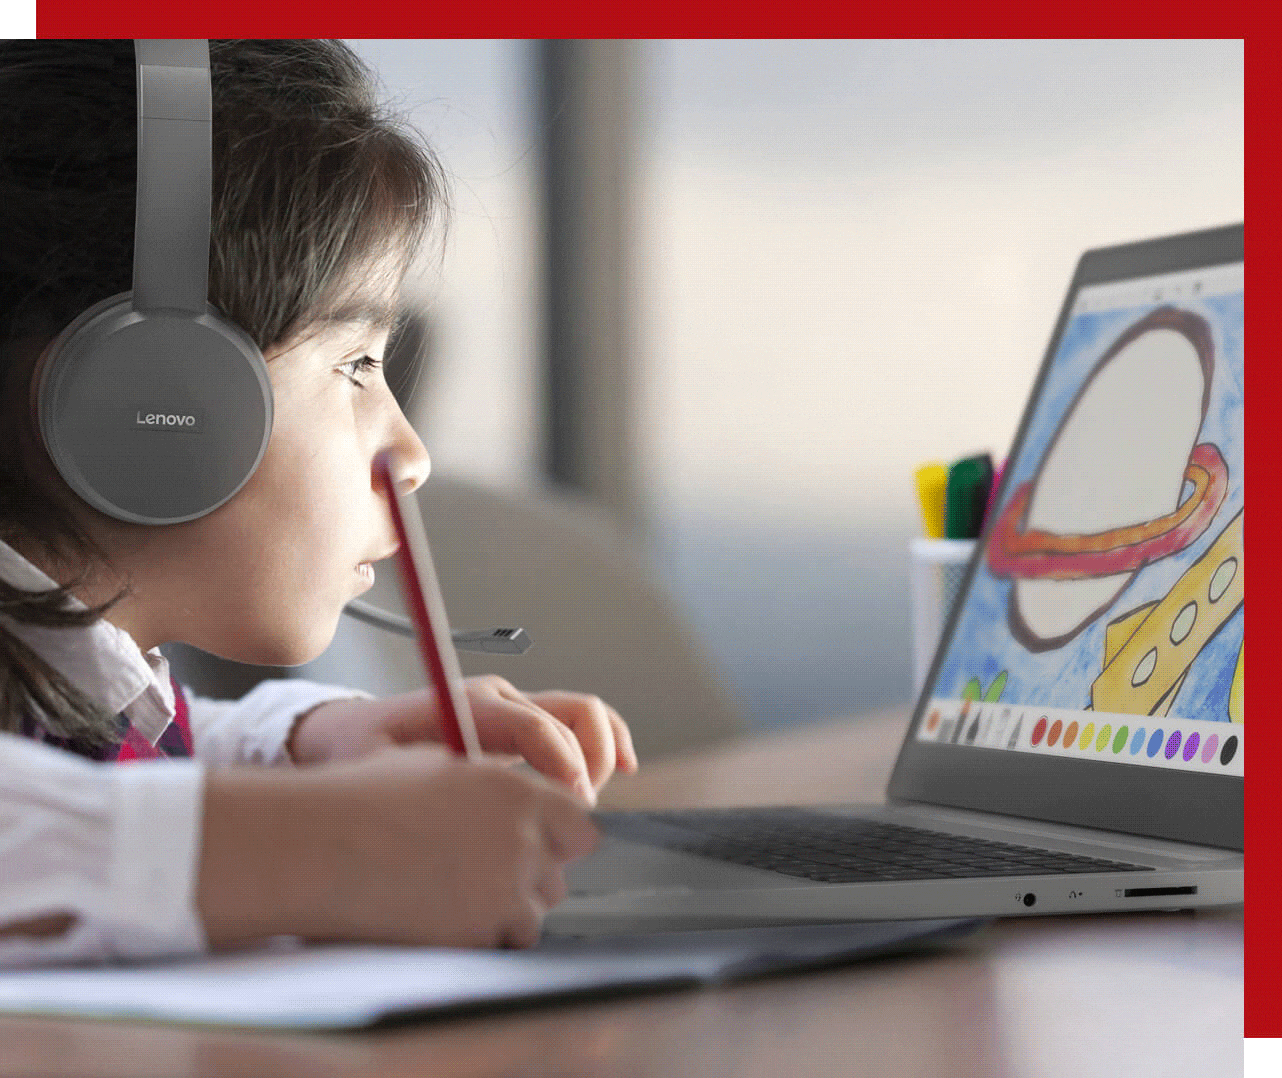 Jeune garçon portant des écouteurs et travaillant sur une application de dessin sur un portable Lenovo, montrant une planète et une fusée changeant les couleurs entre le rouge et le jaune